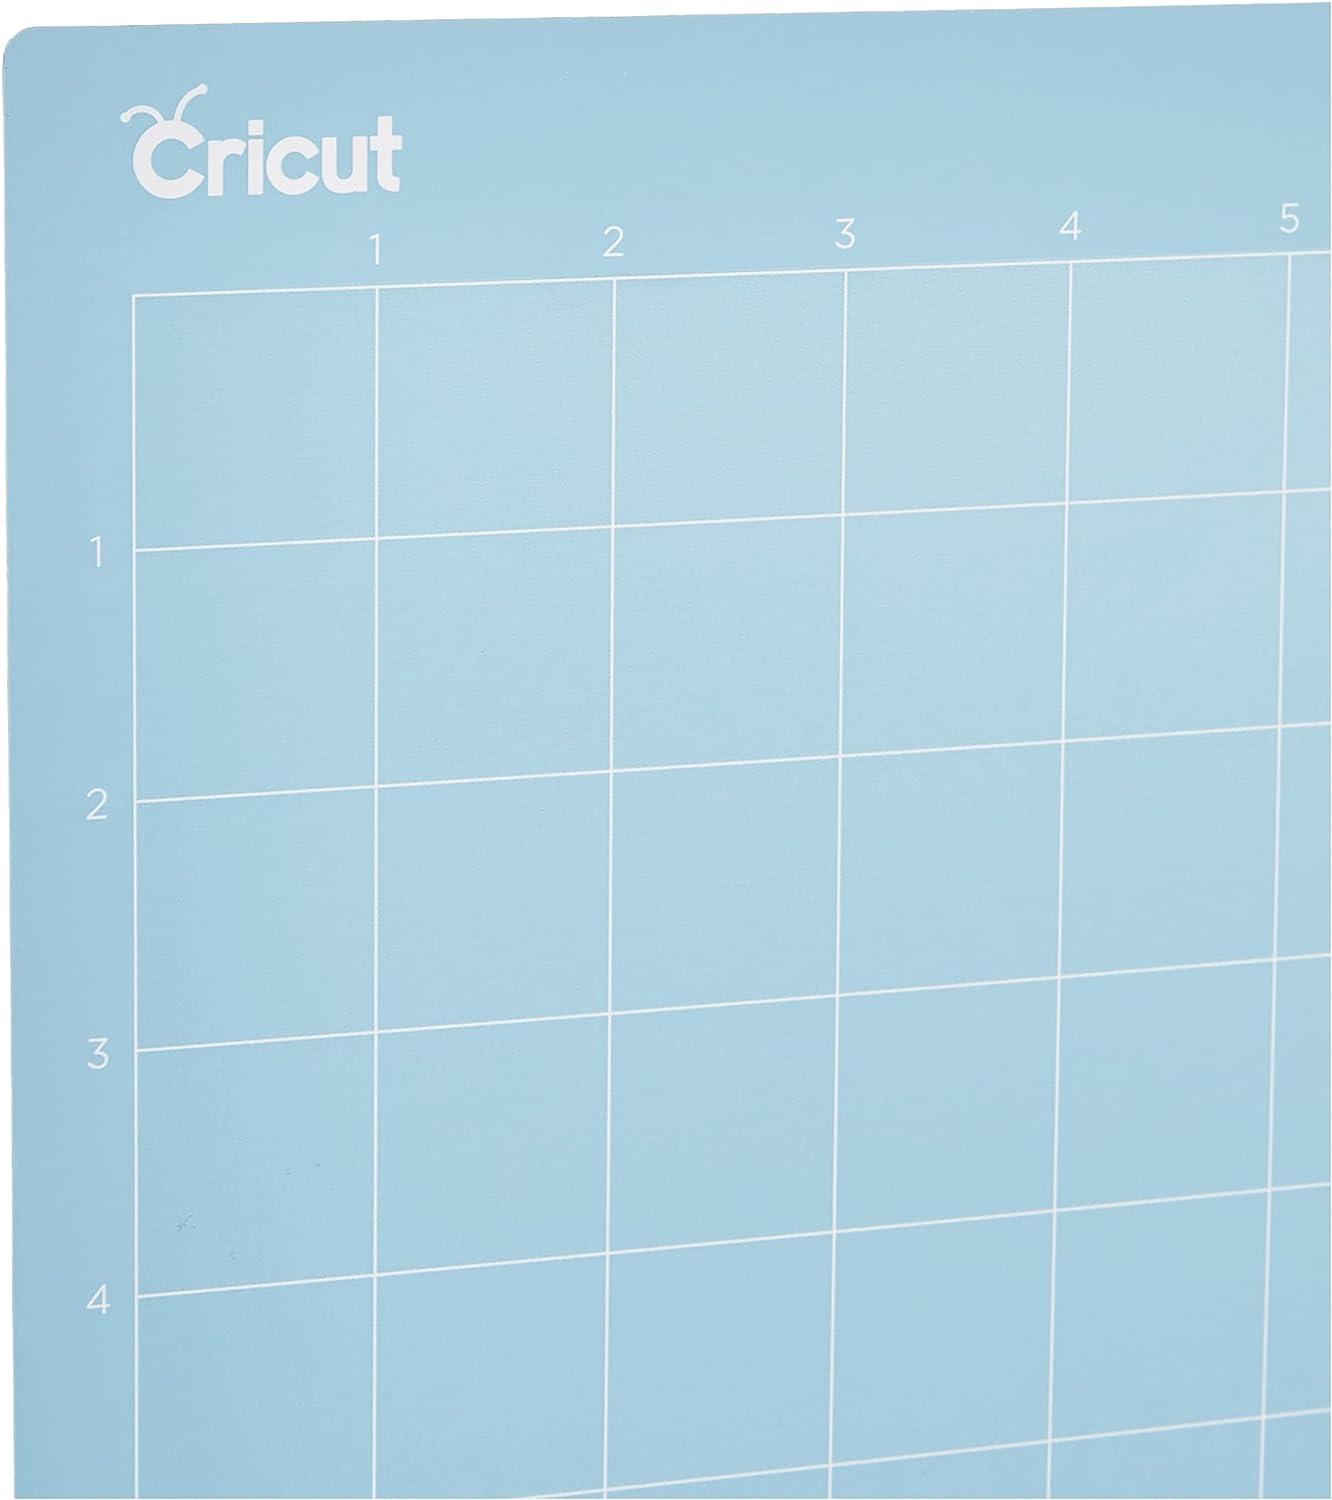 Cricut 12 x 12 LightGrip Cutting Mat 